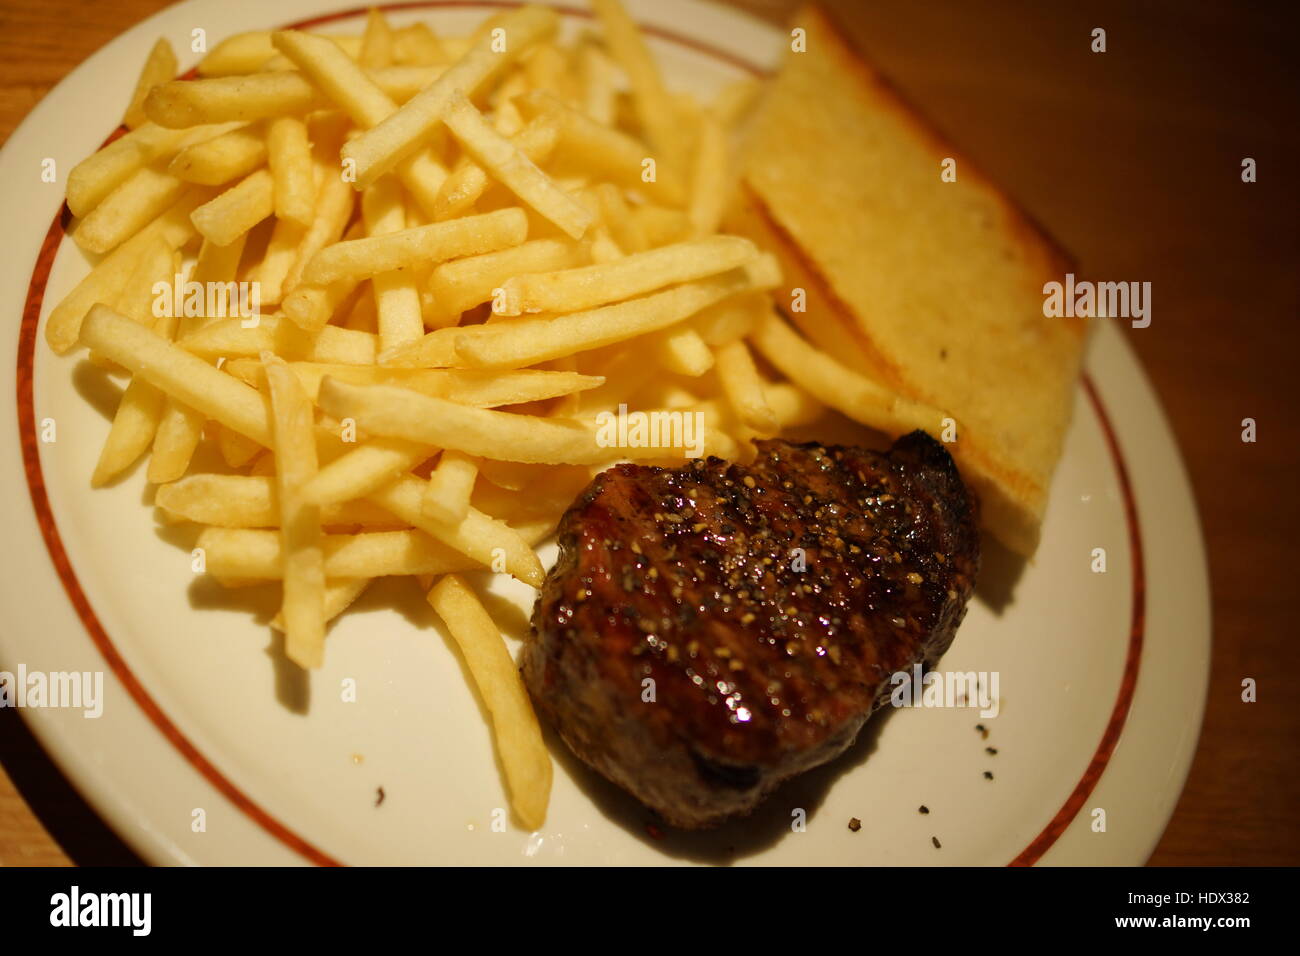 Delicious steak with fried potatos Stock Photo